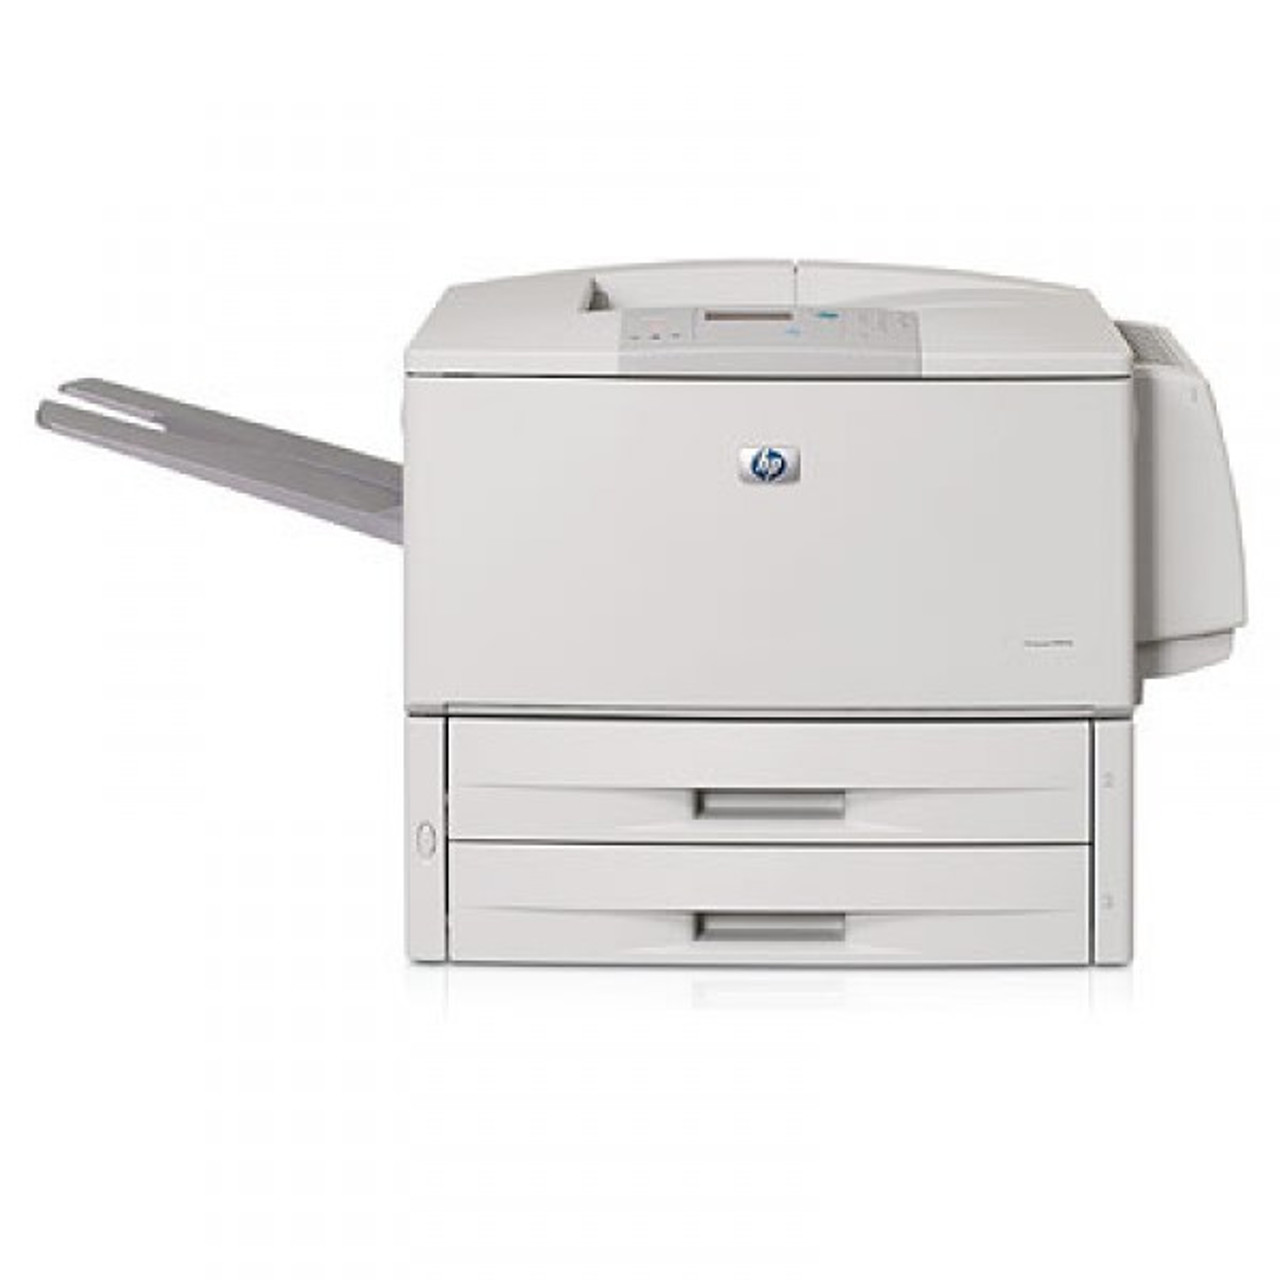 LaserJet 9000 Printer series